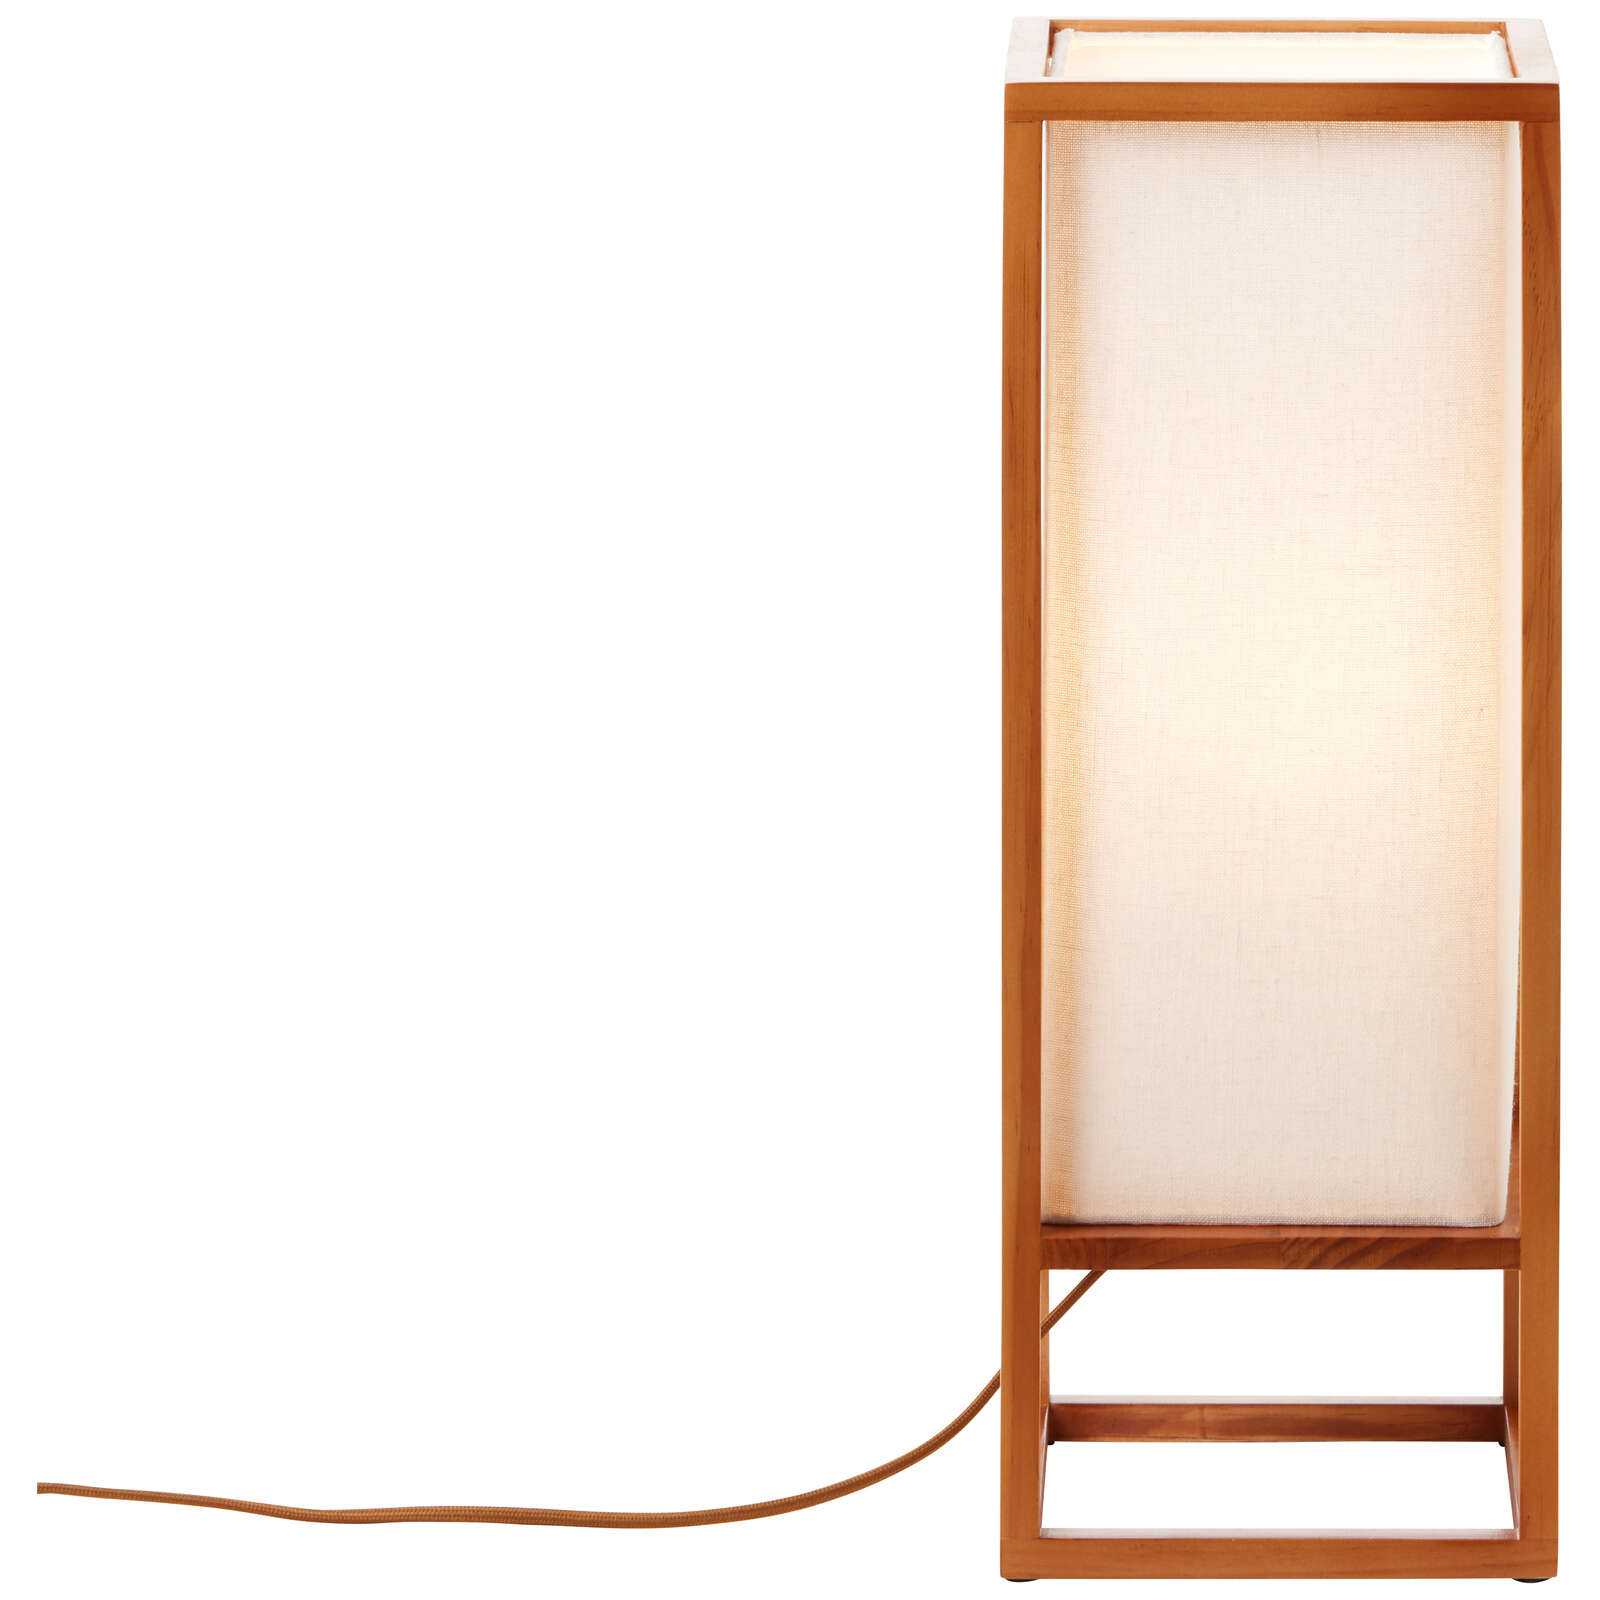             Textile table lamp - Nala 1 - Brown
        